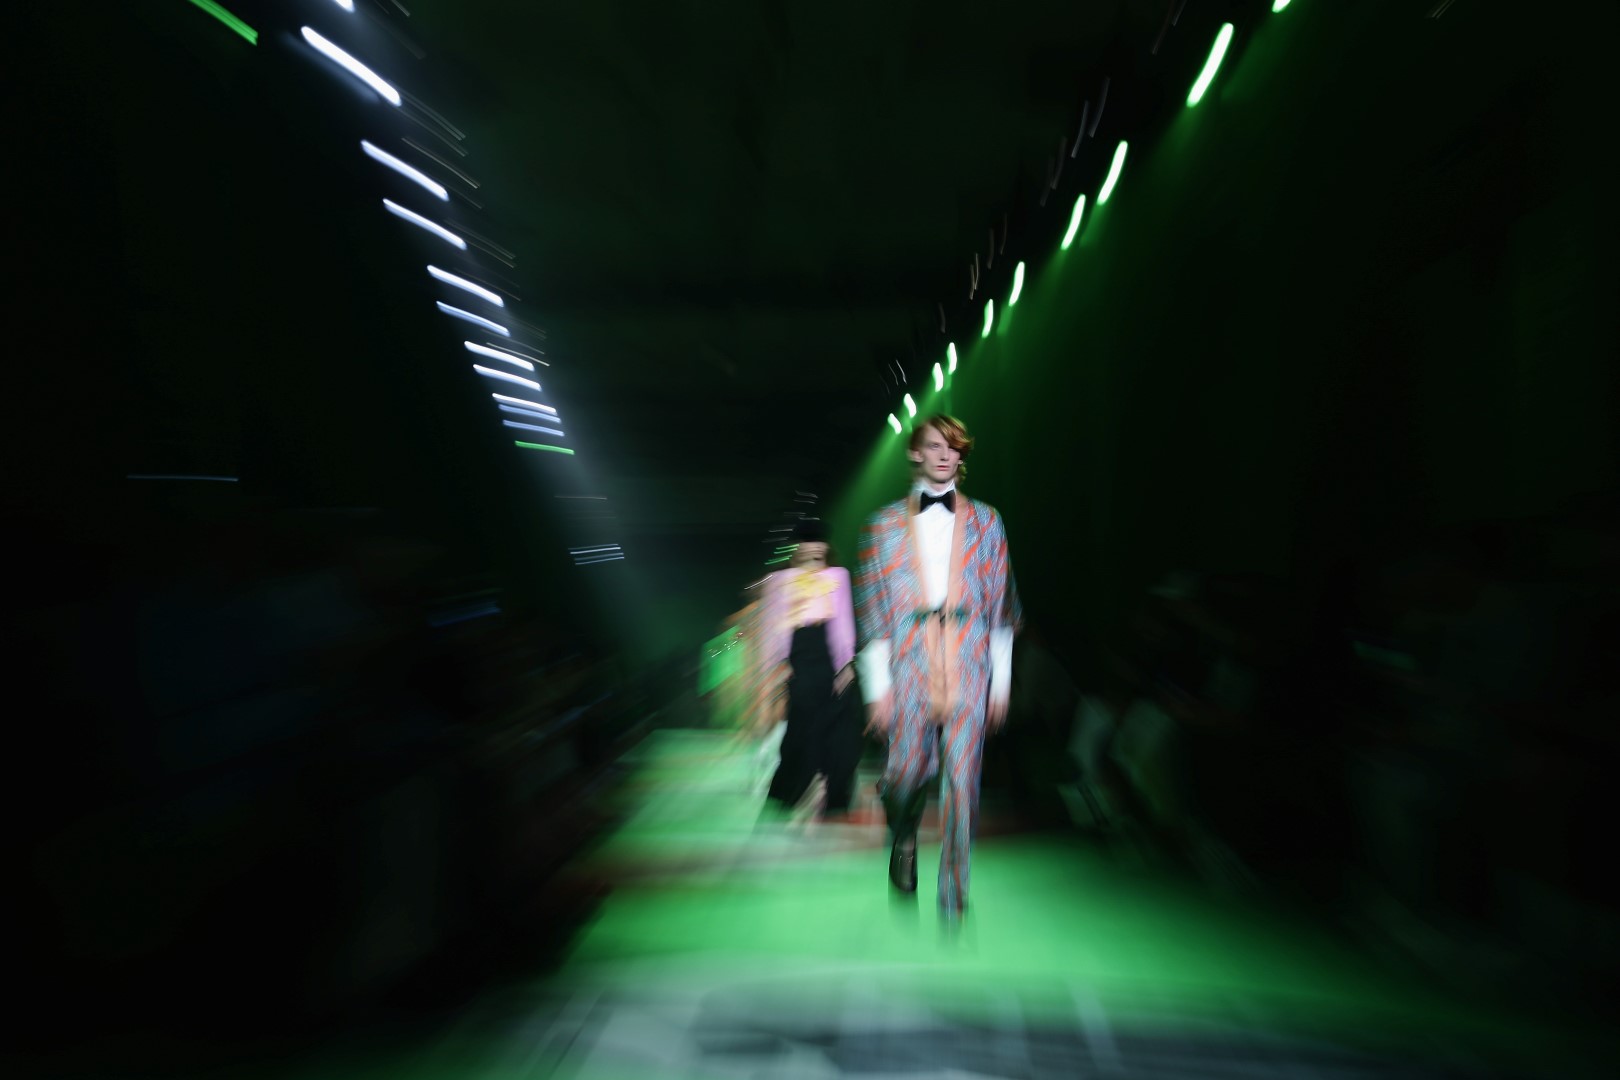 Gucci collezione uomo primavera estate 2017, la sfilata a Milano Moda Uomo